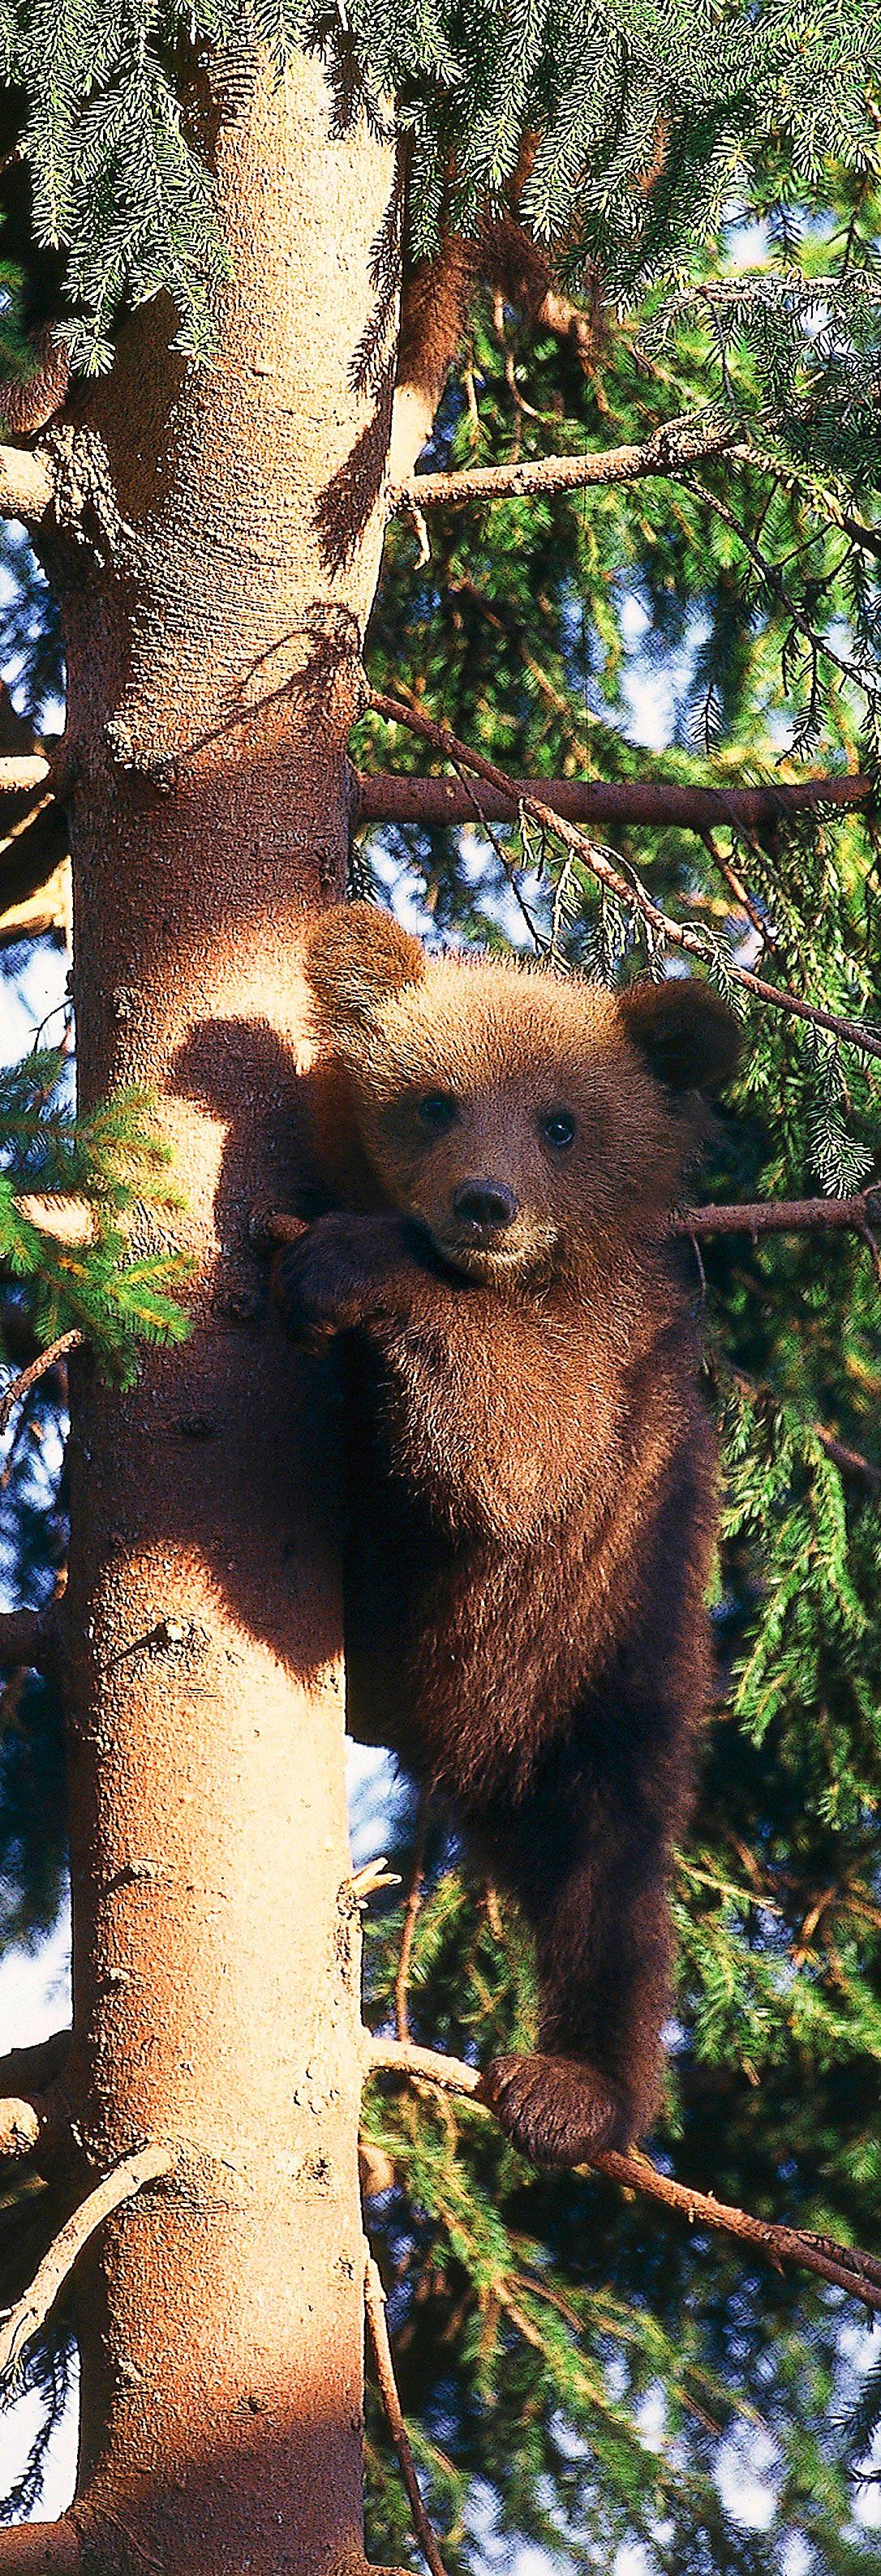 Björnungen Hedda, Järvzoo, Järvsö Den här kramgoa tjejen föddes på Järvzoo den 21 januari och är ett riktigt busfrö som tycker om att klättra i träd. Men mamma ­Lovisa håller ett öga på henne.